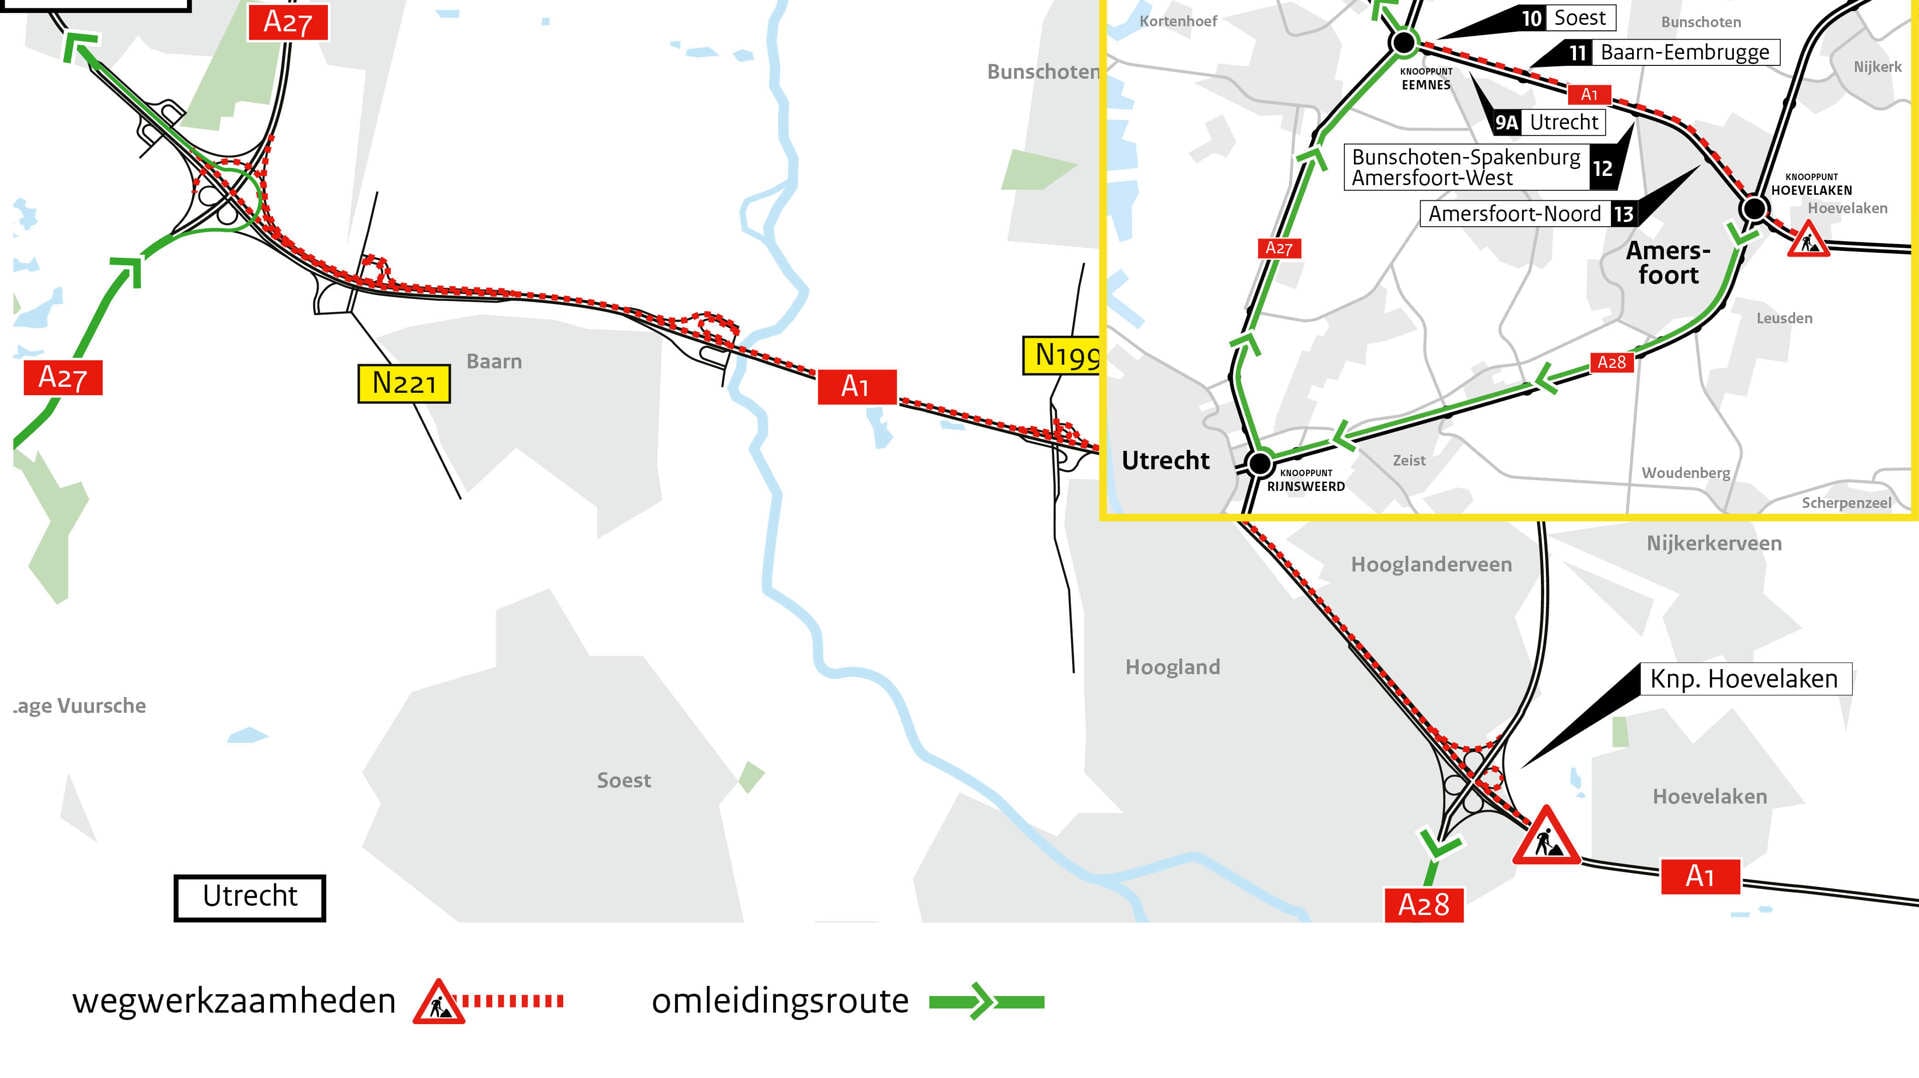 Groot onderhoud aan de A1 van knooppunt Eemnes tot Bunschoten.